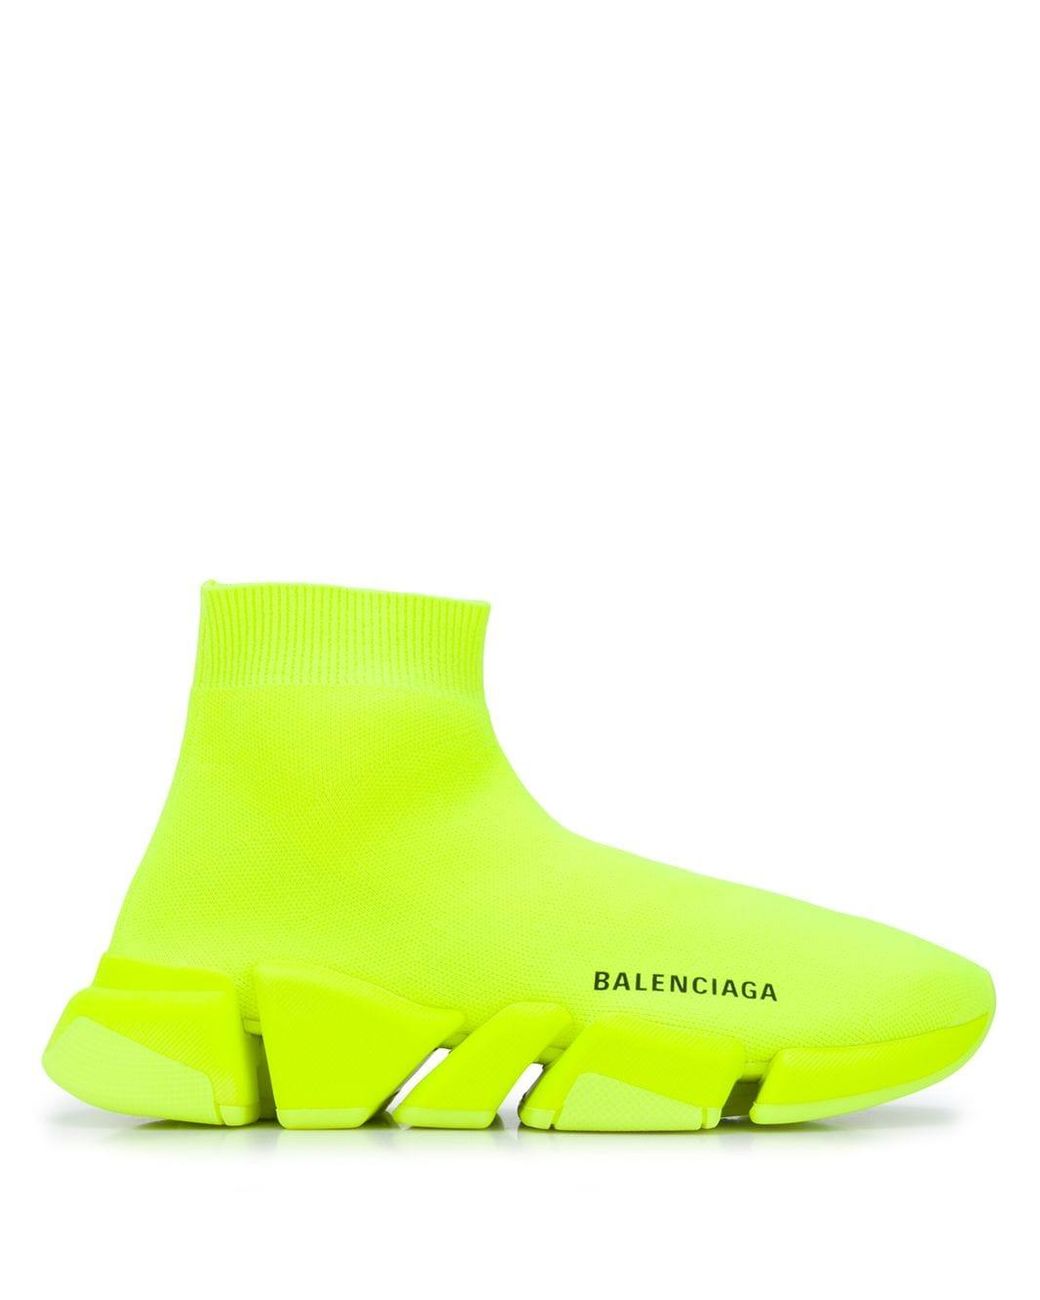 Chi tiết hơn 85 về balenciaga shoes yellow mới nhất - cdgdbentre.edu.vn